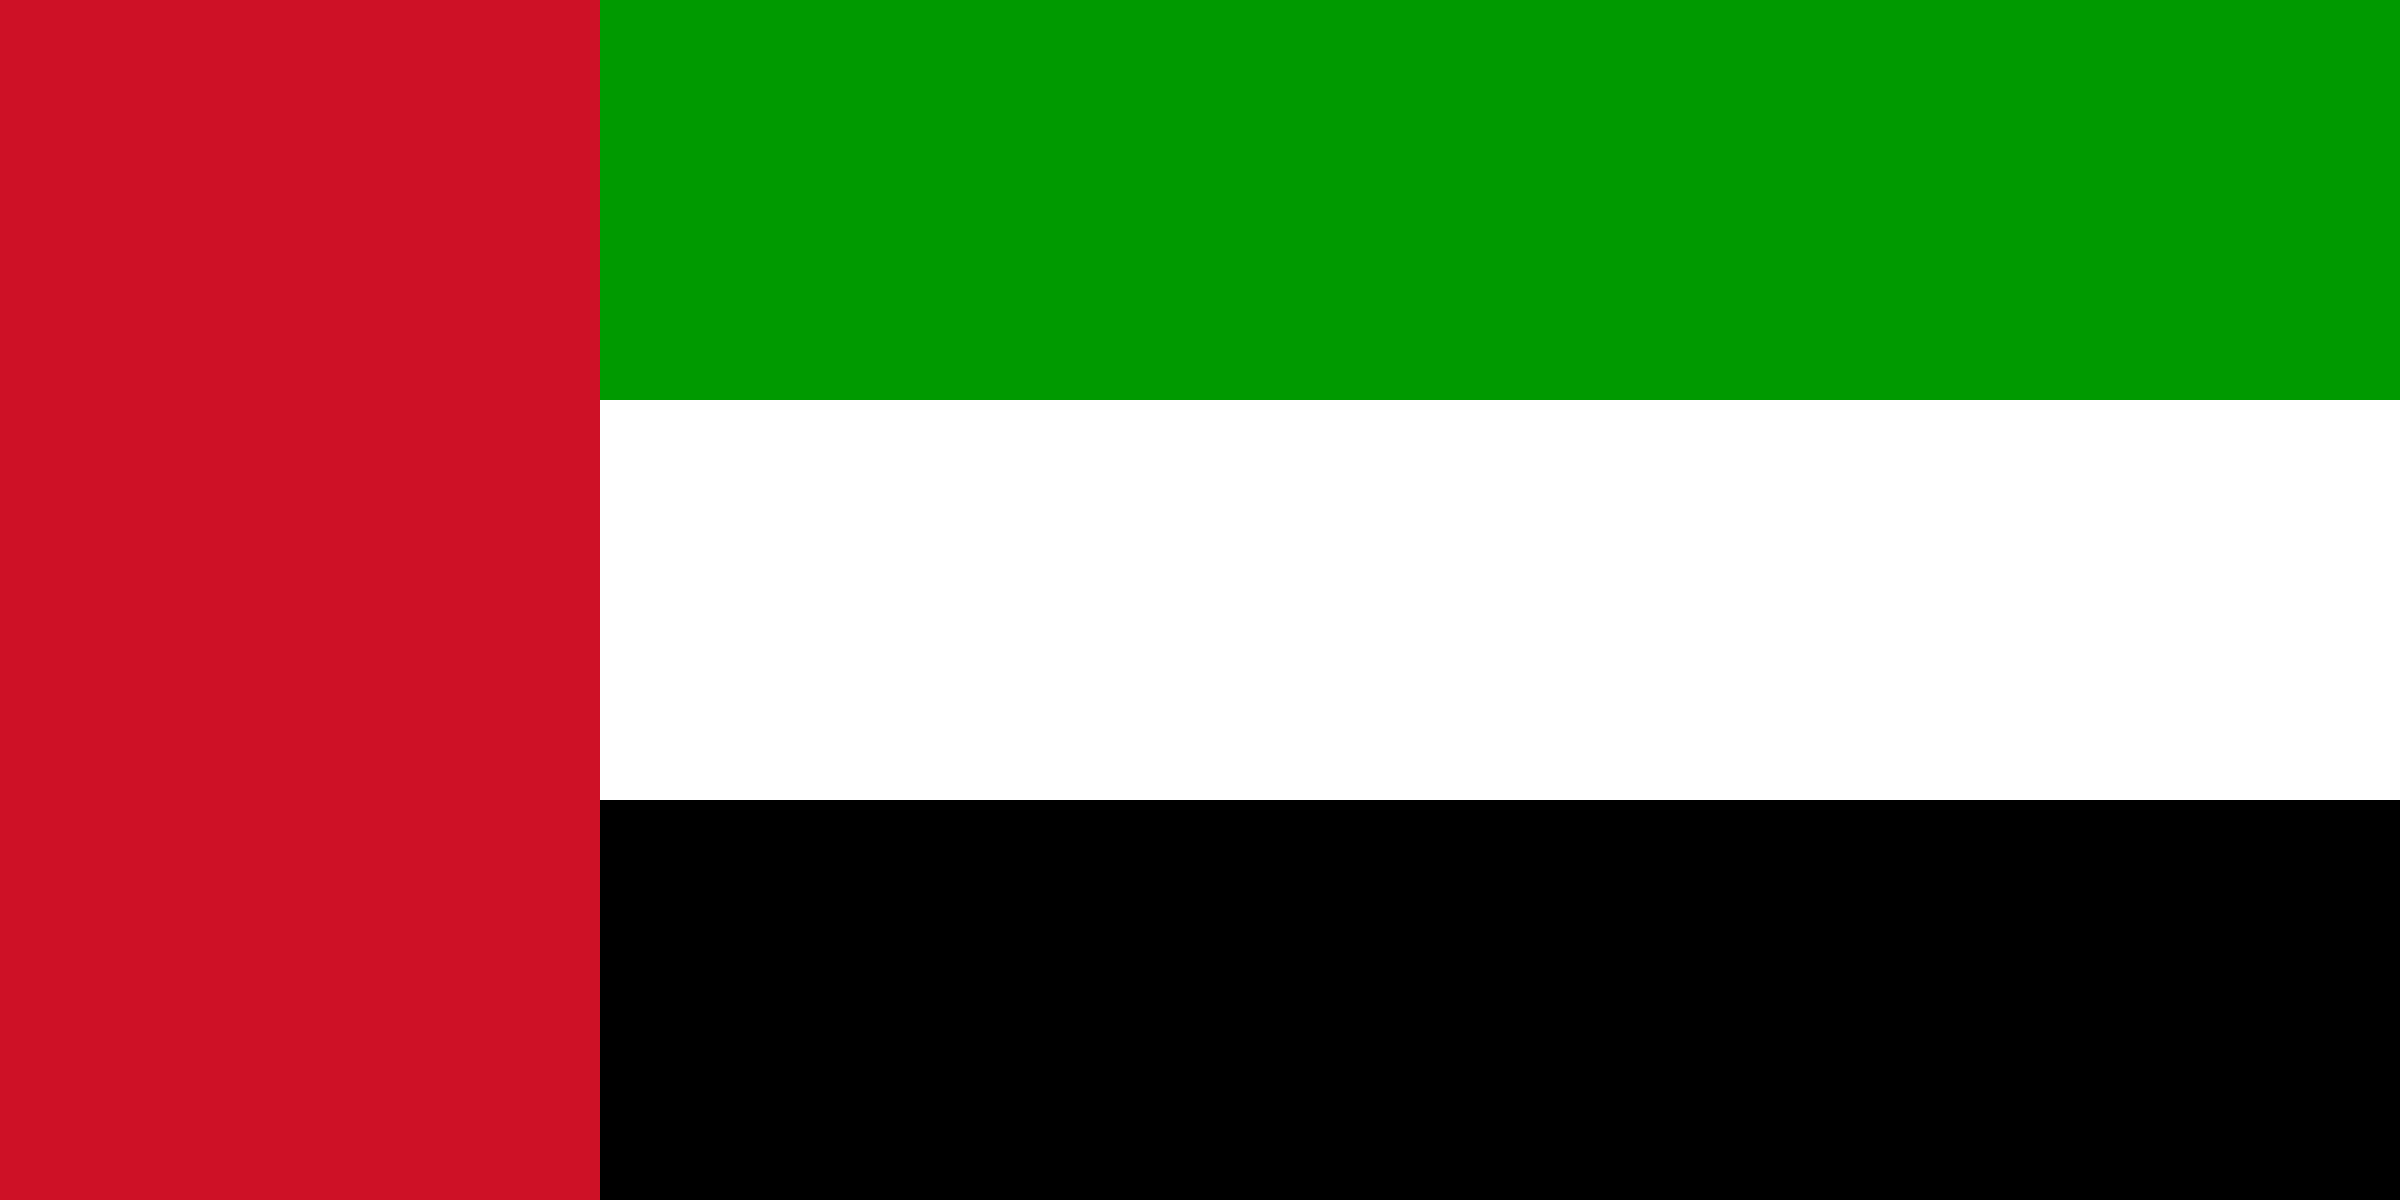 la imagen muestra la bandera de los emiratos arabes